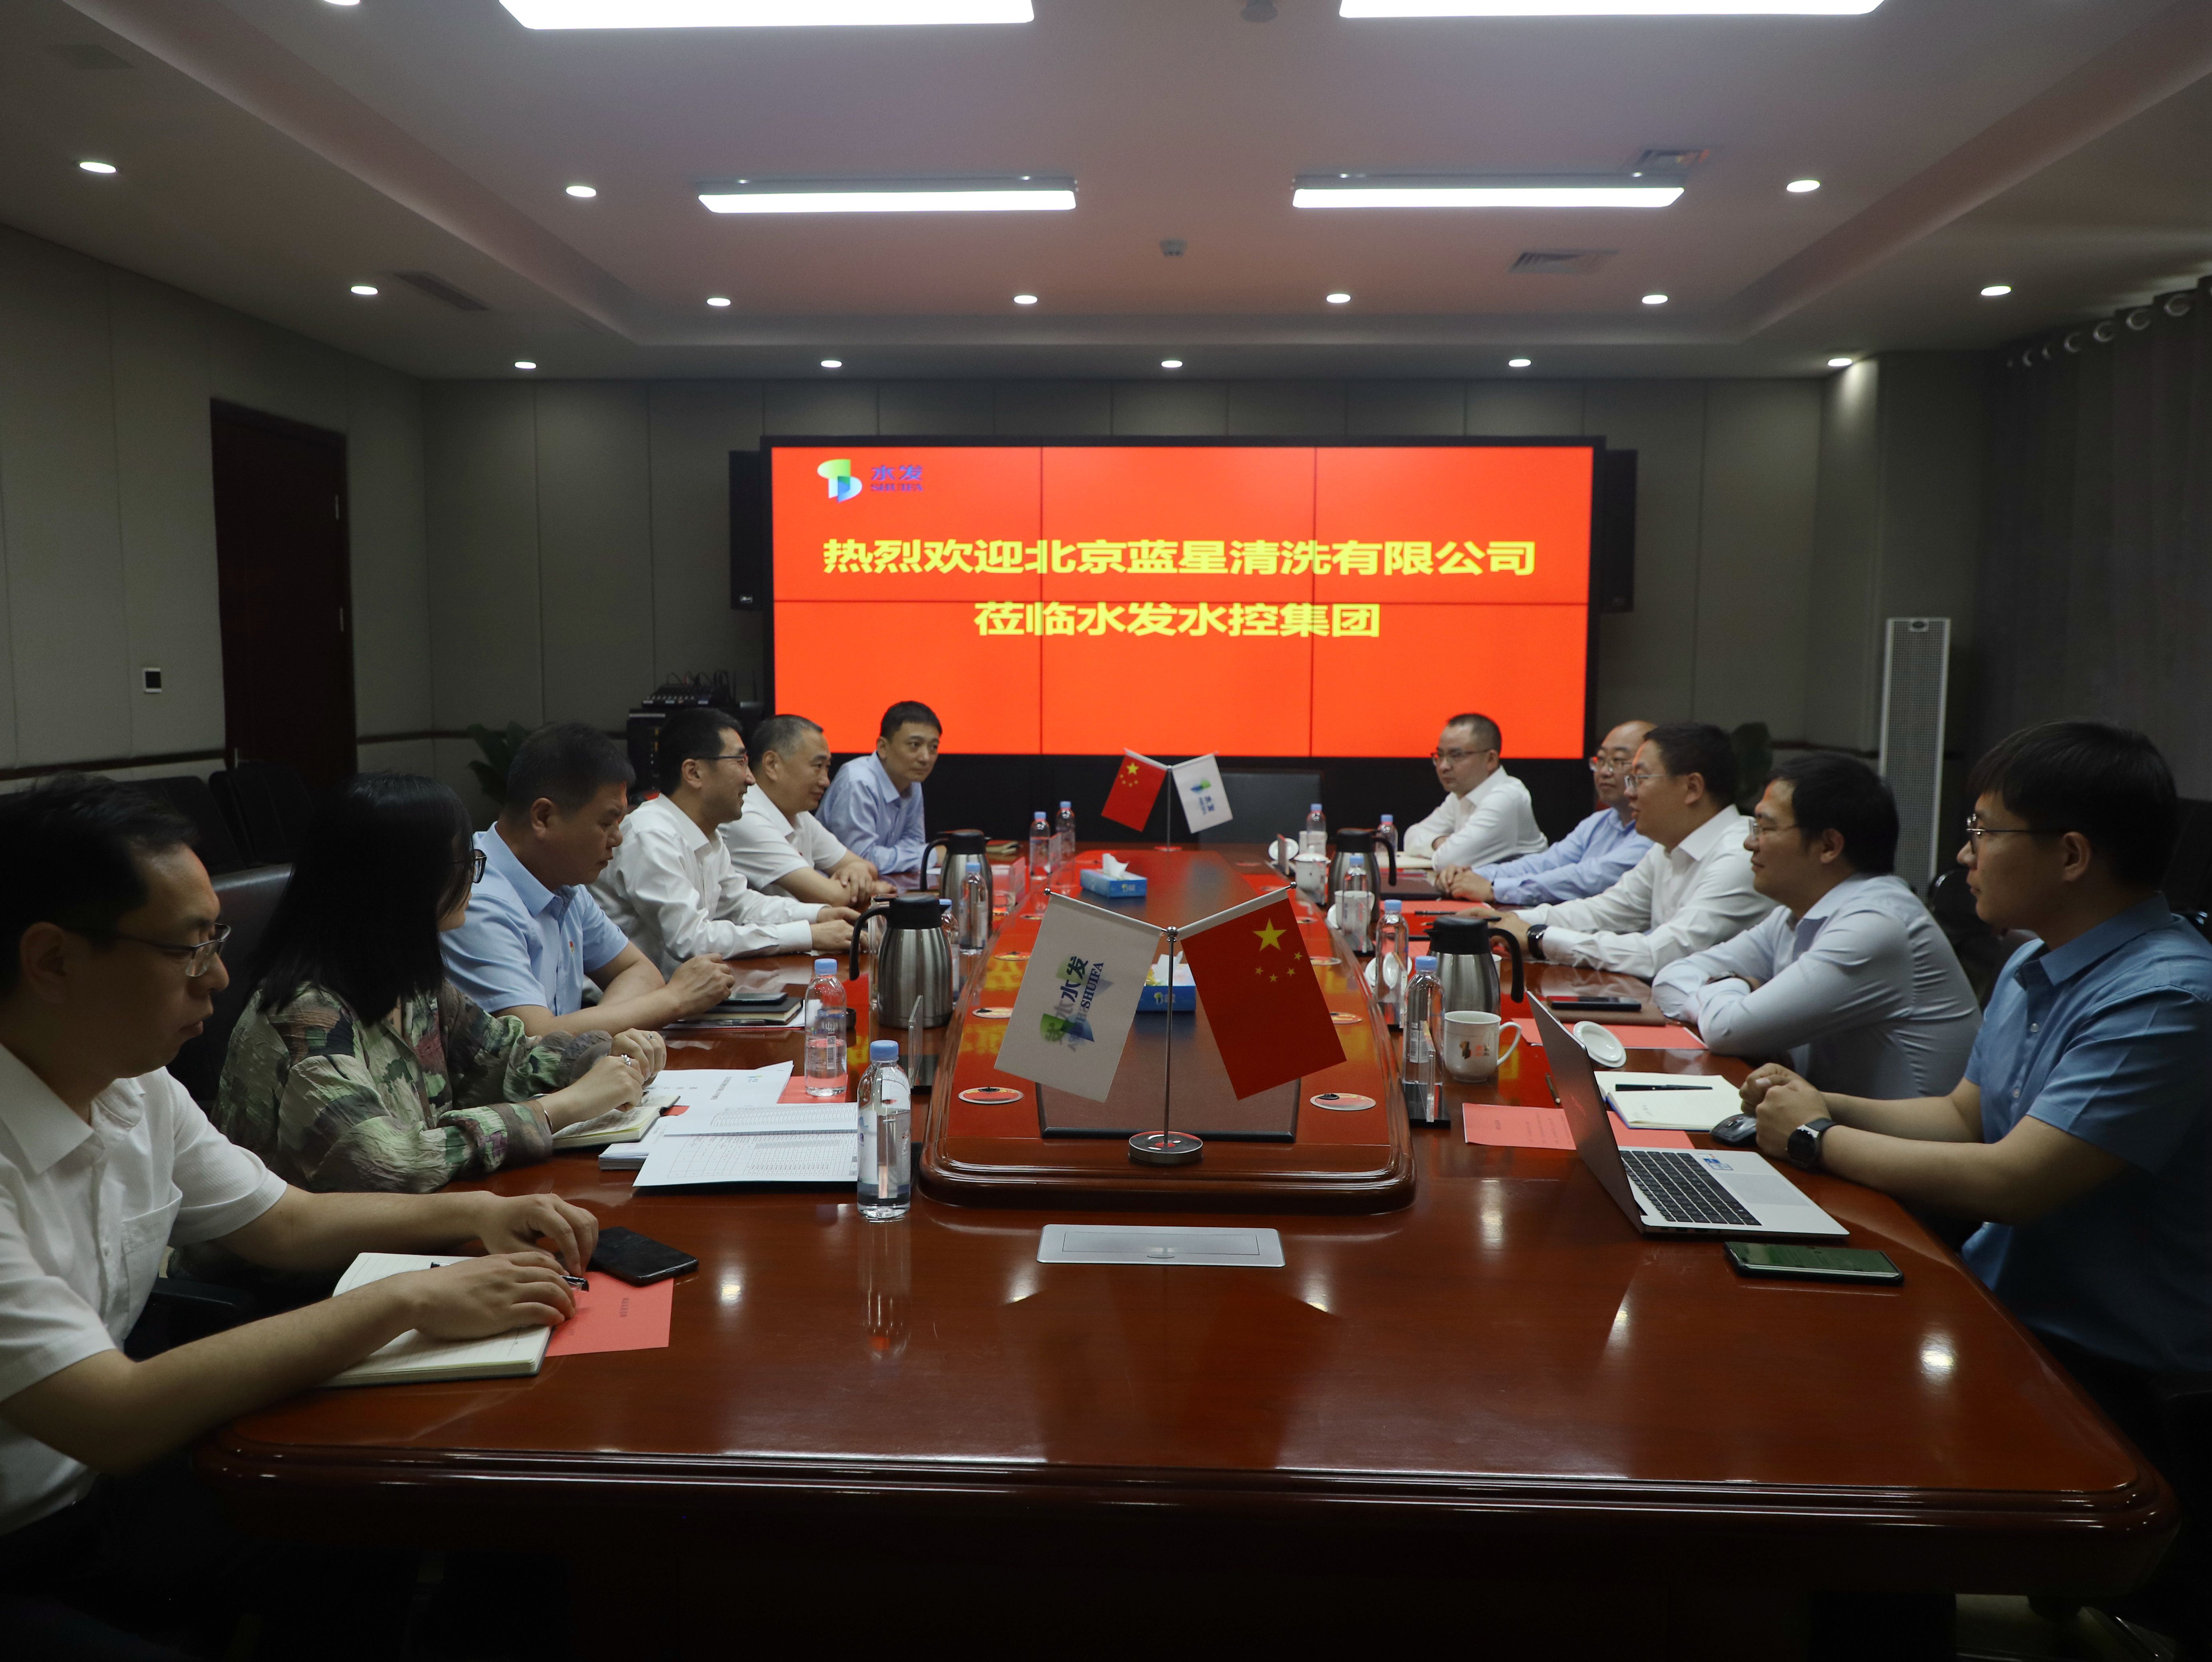 北京蓝星清洗有限公司考察团到访新葡澳京水控集团